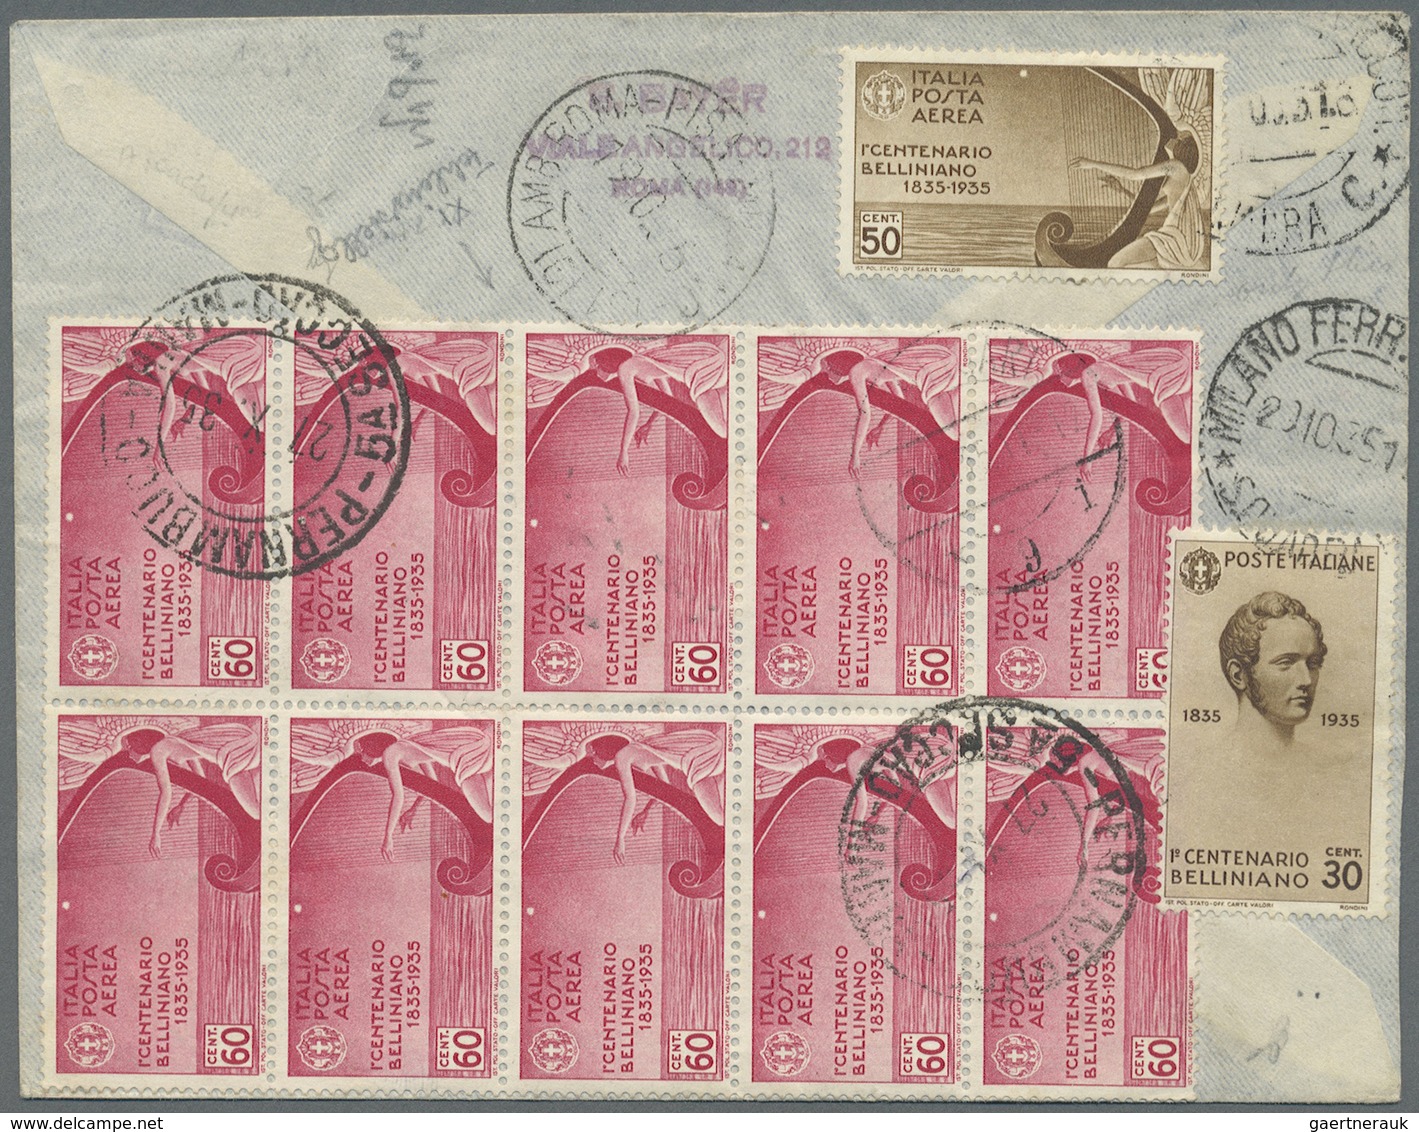 Br Zeppelinpost Europa: 1935, VATIKAN: Reco-Drucksachenbrief Mit Juristenkongress-Marken (s. Mi-Nrn.), - Autres - Europe